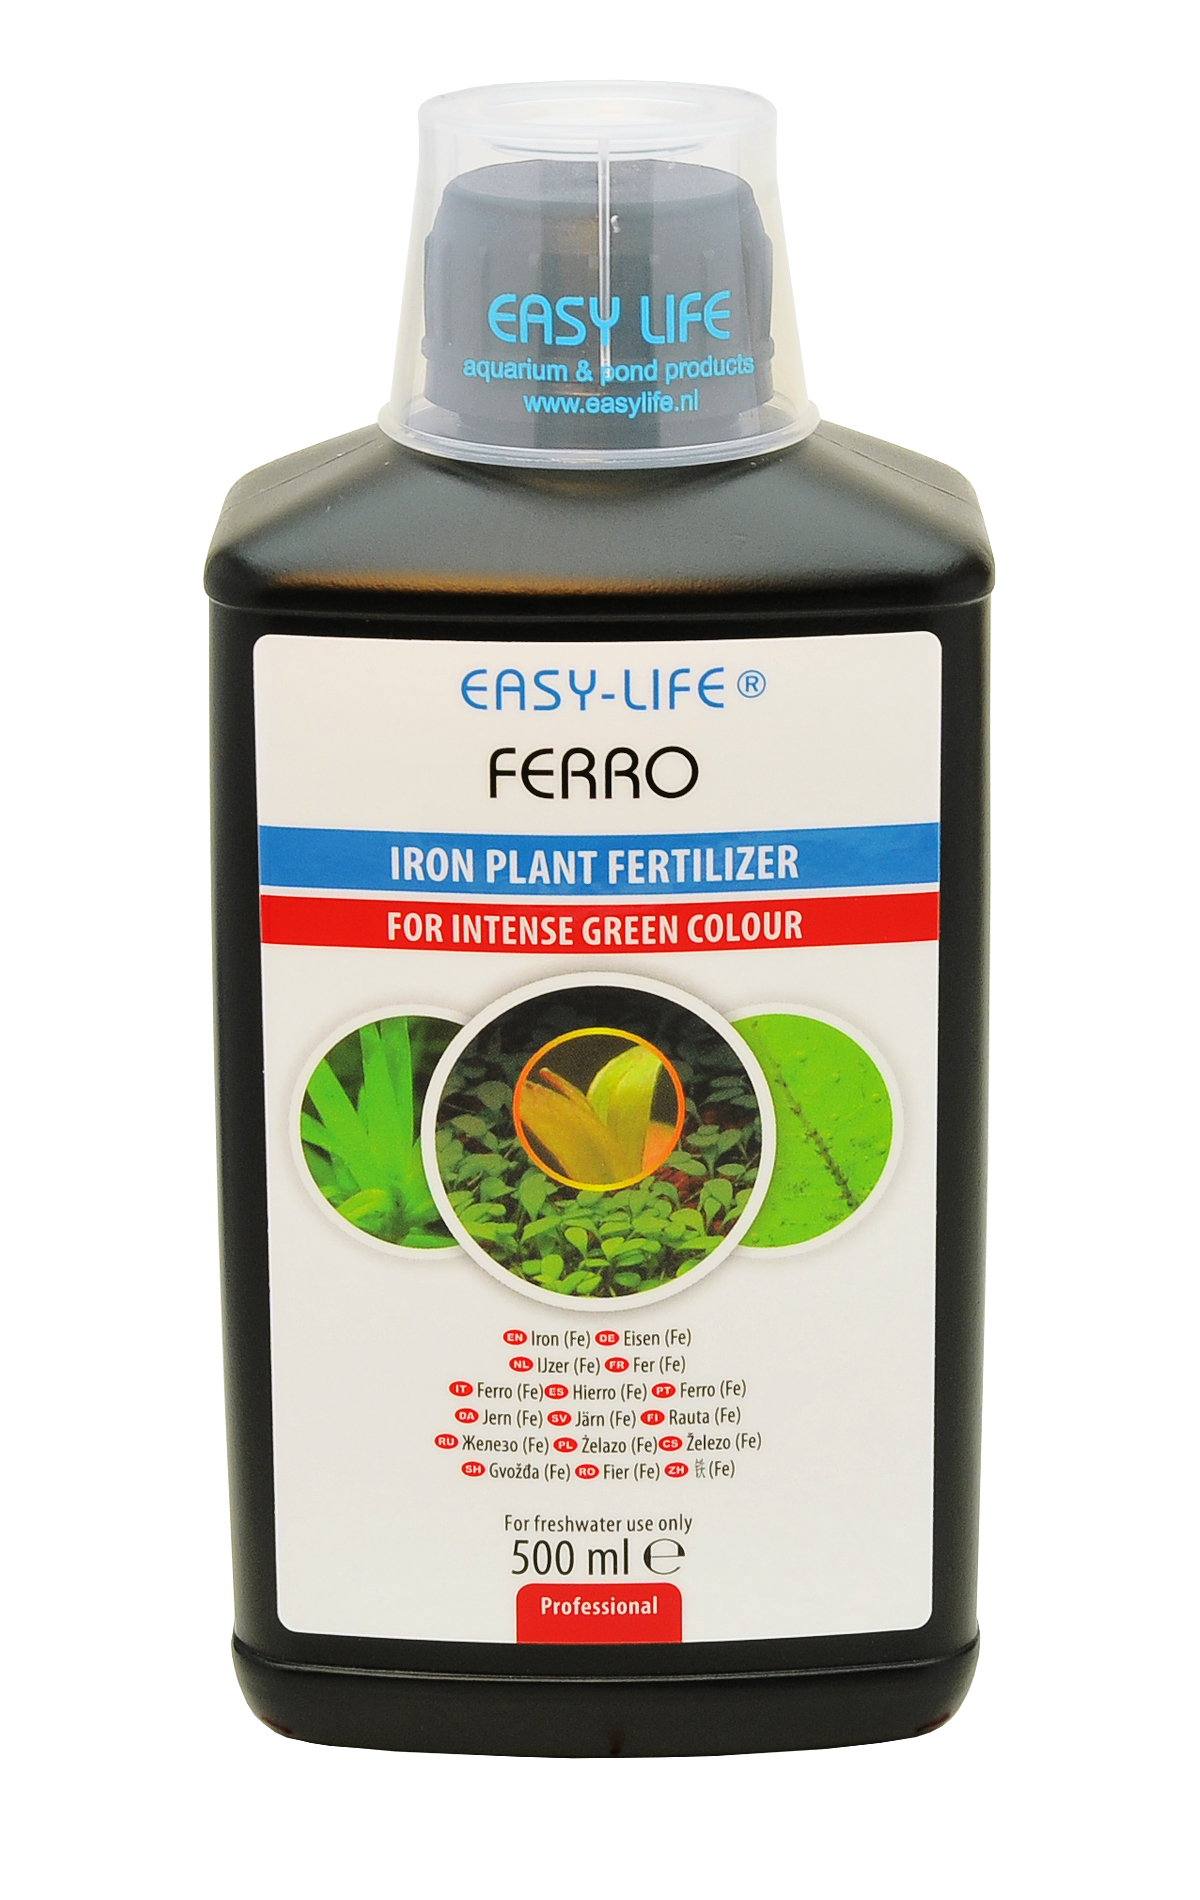 EASY-LIFE Ferro 500ml source de fer concentrée et puissante pour les plantes d\'aquarium. Traite jusqu\'à 5000 litres.